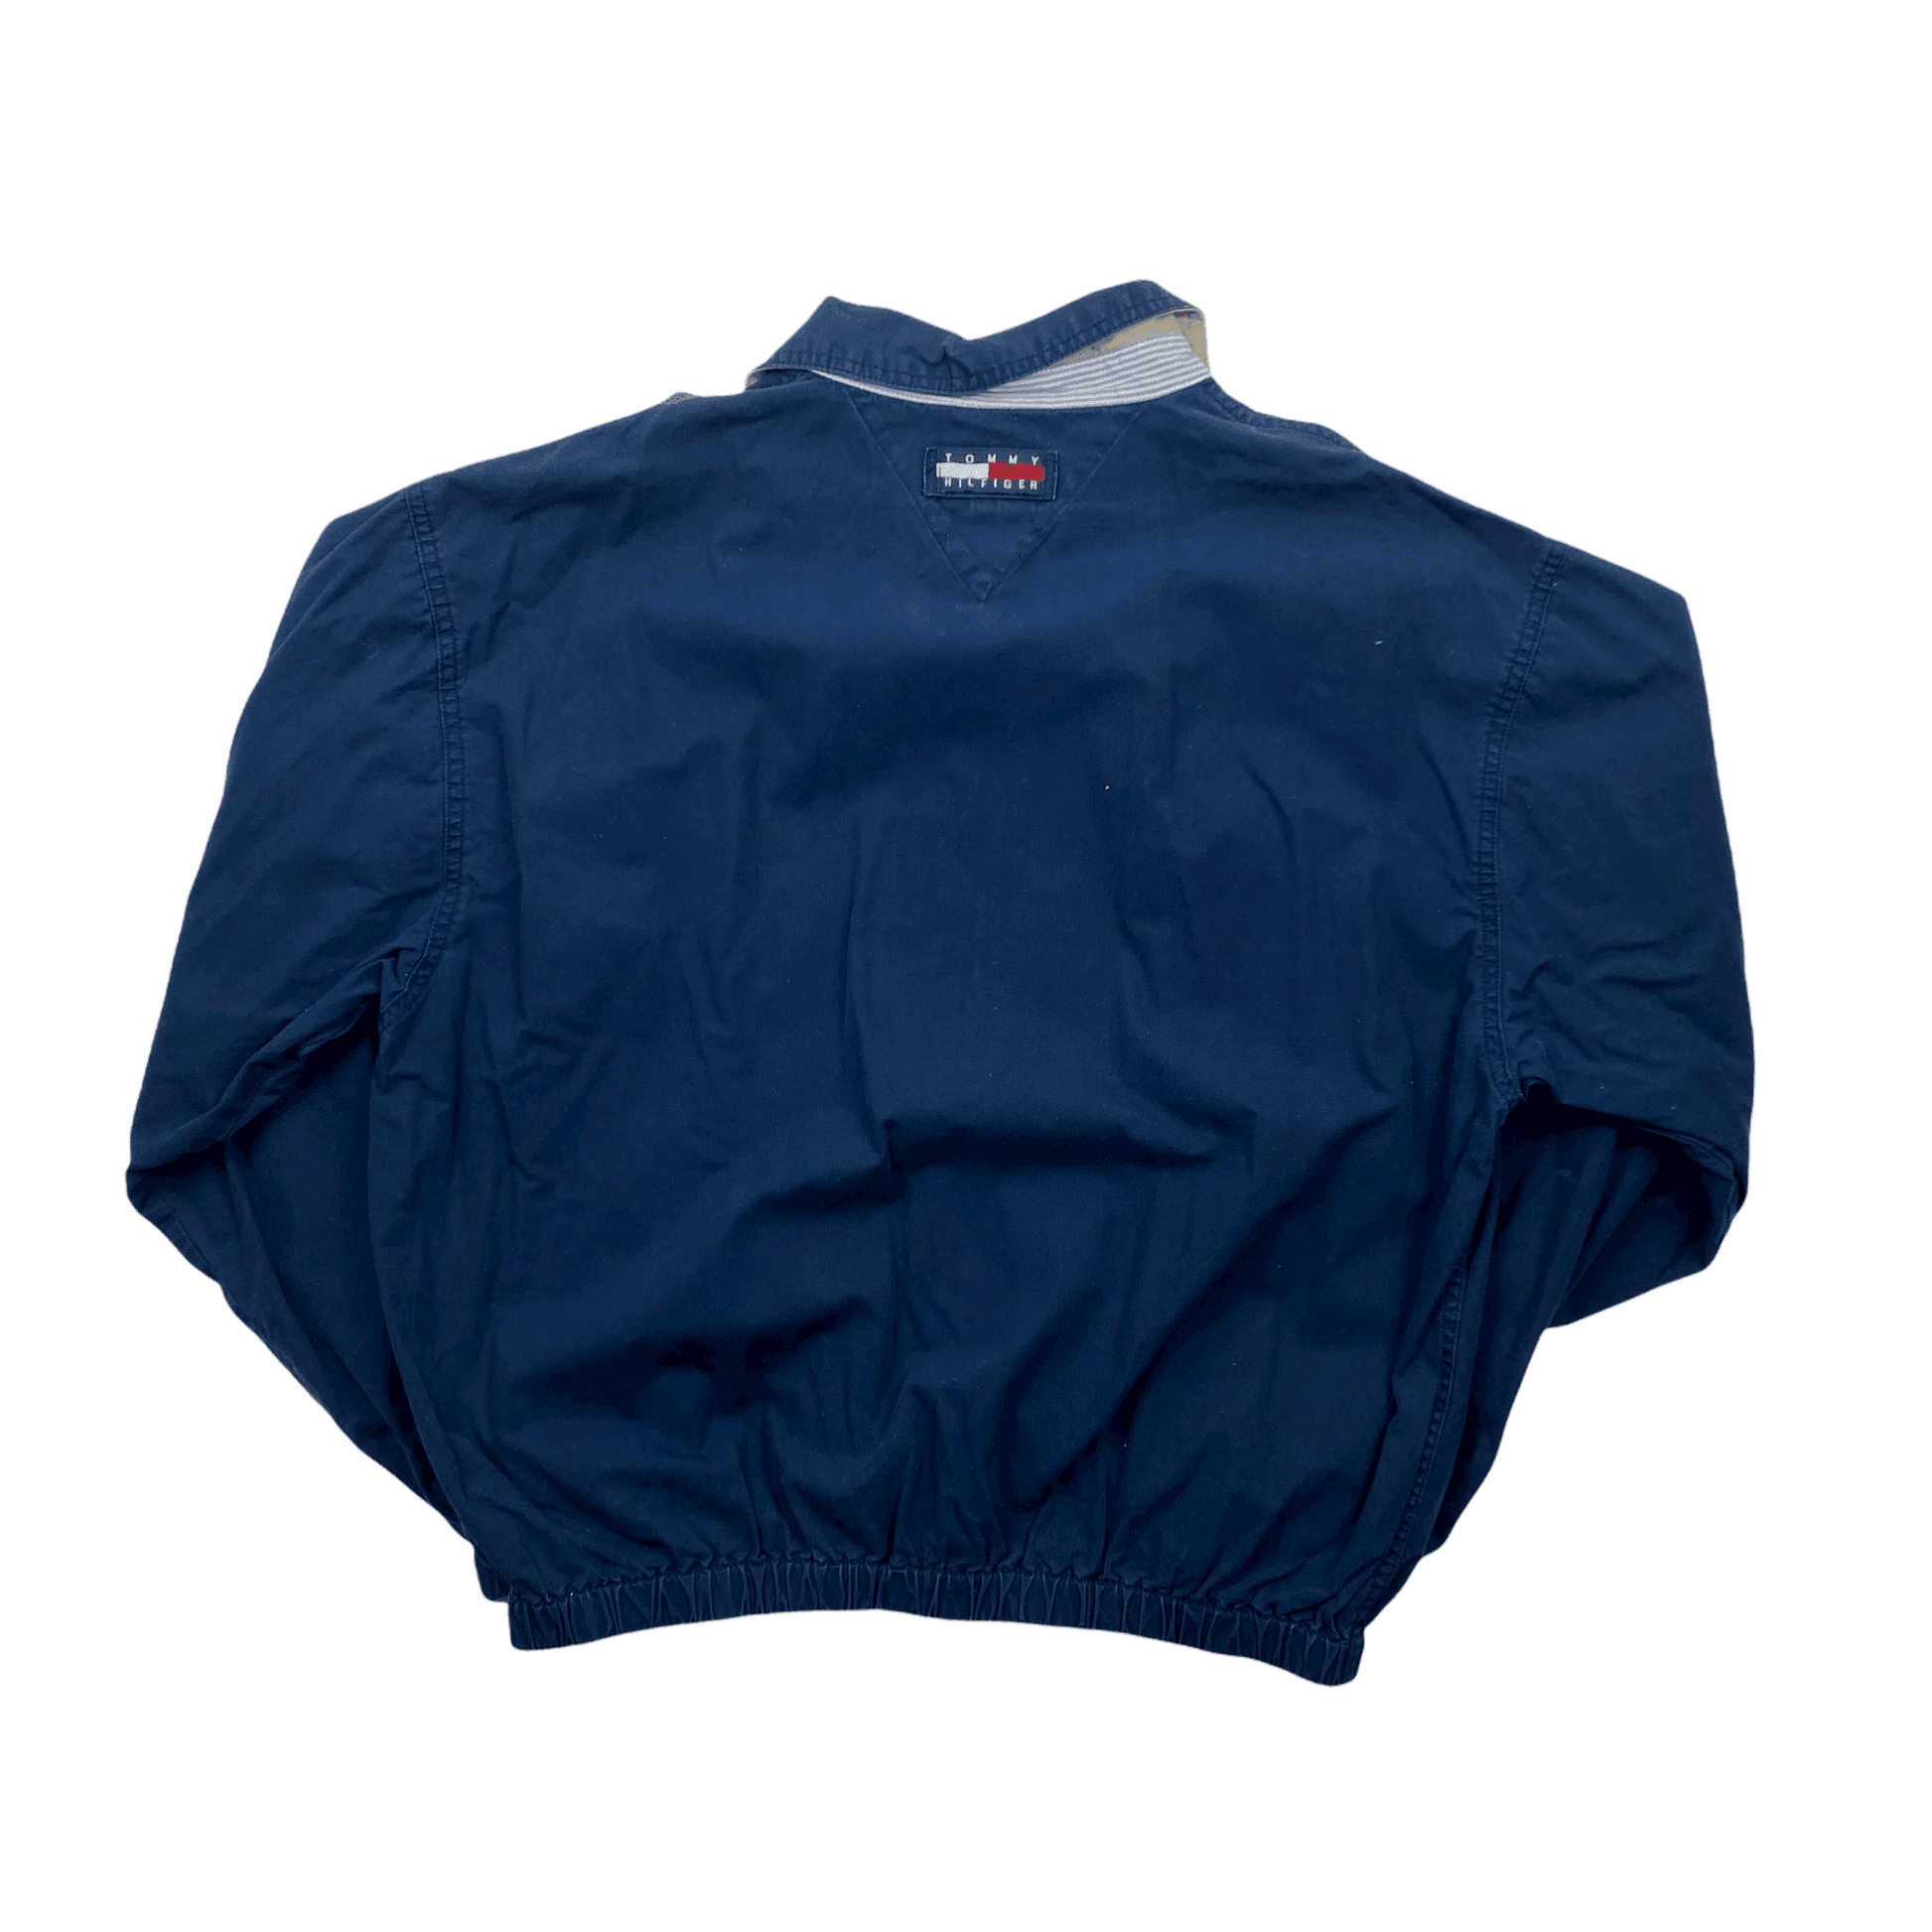 Vintage Navy Blue Tommy Hilfiger Crest Harrington Jacket - Large - The Streetwear Studio